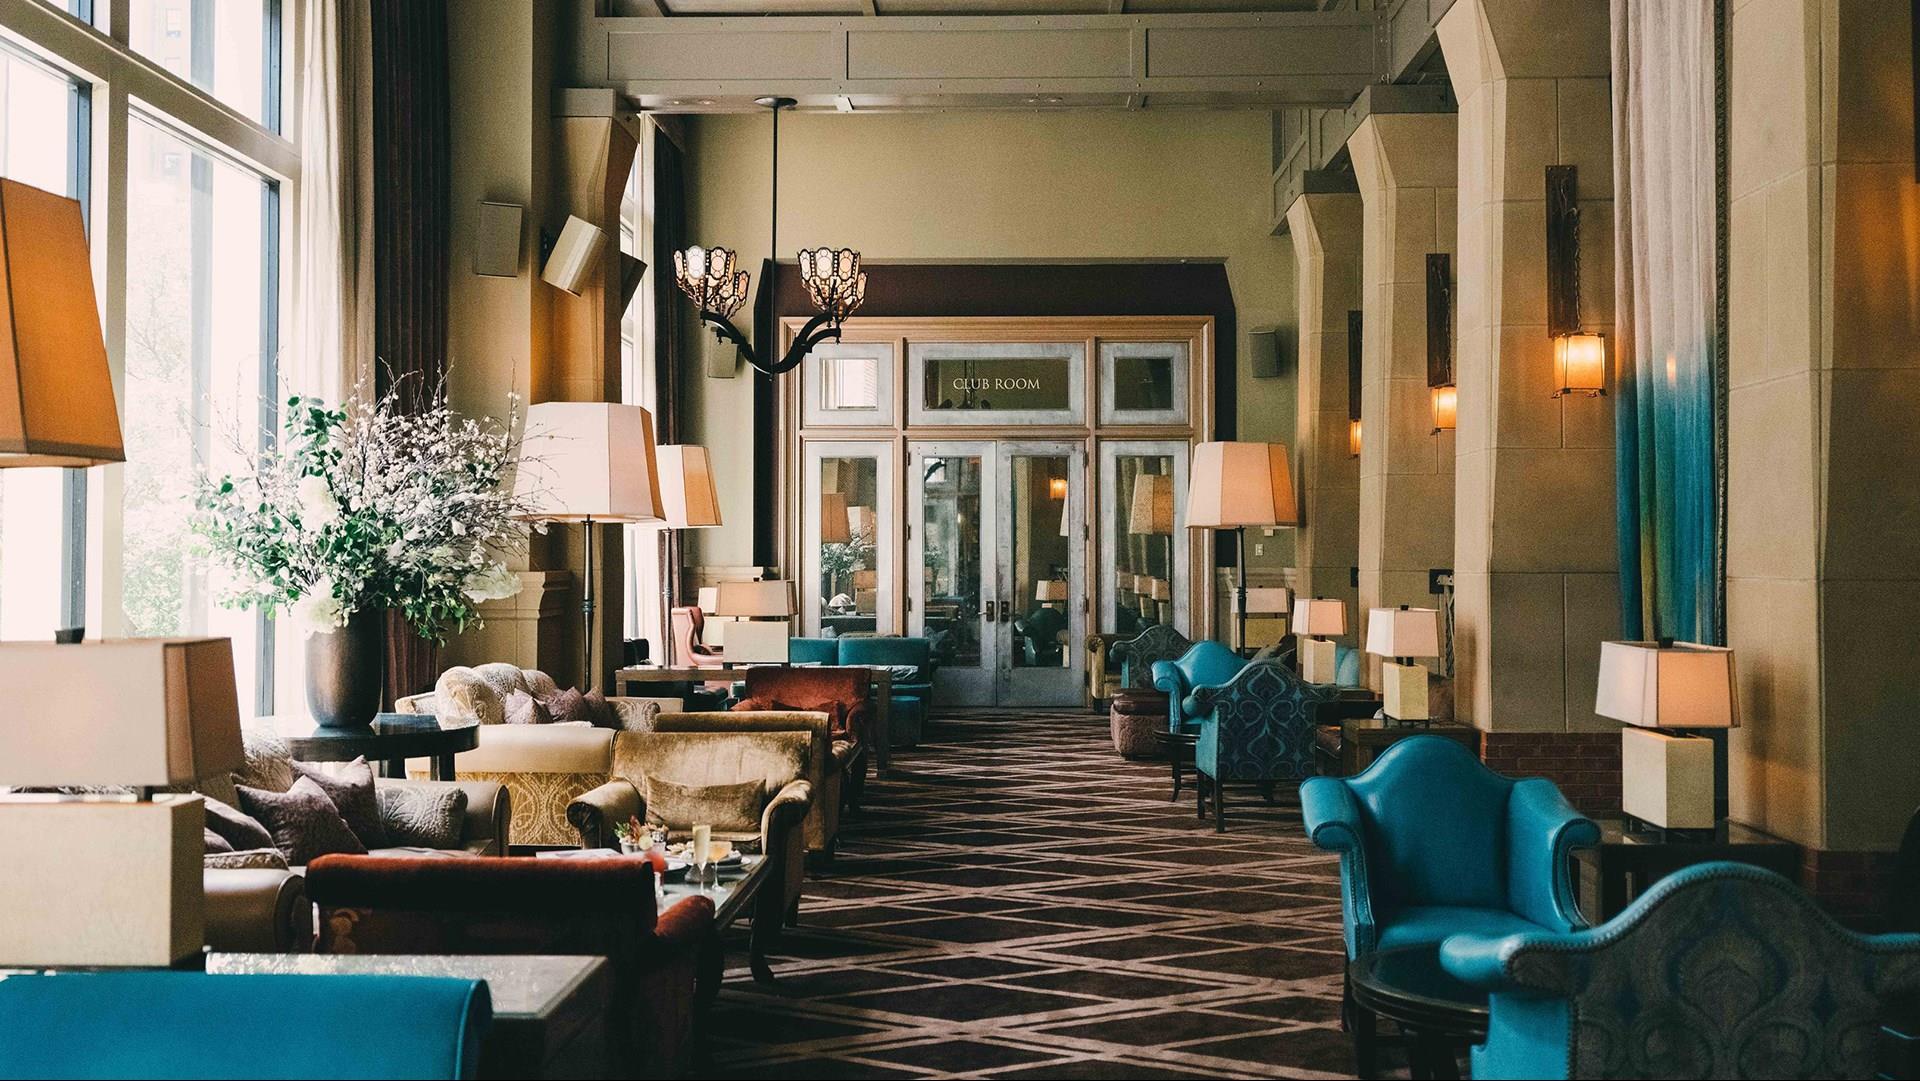 Soho Grand Hotel in New York, NY